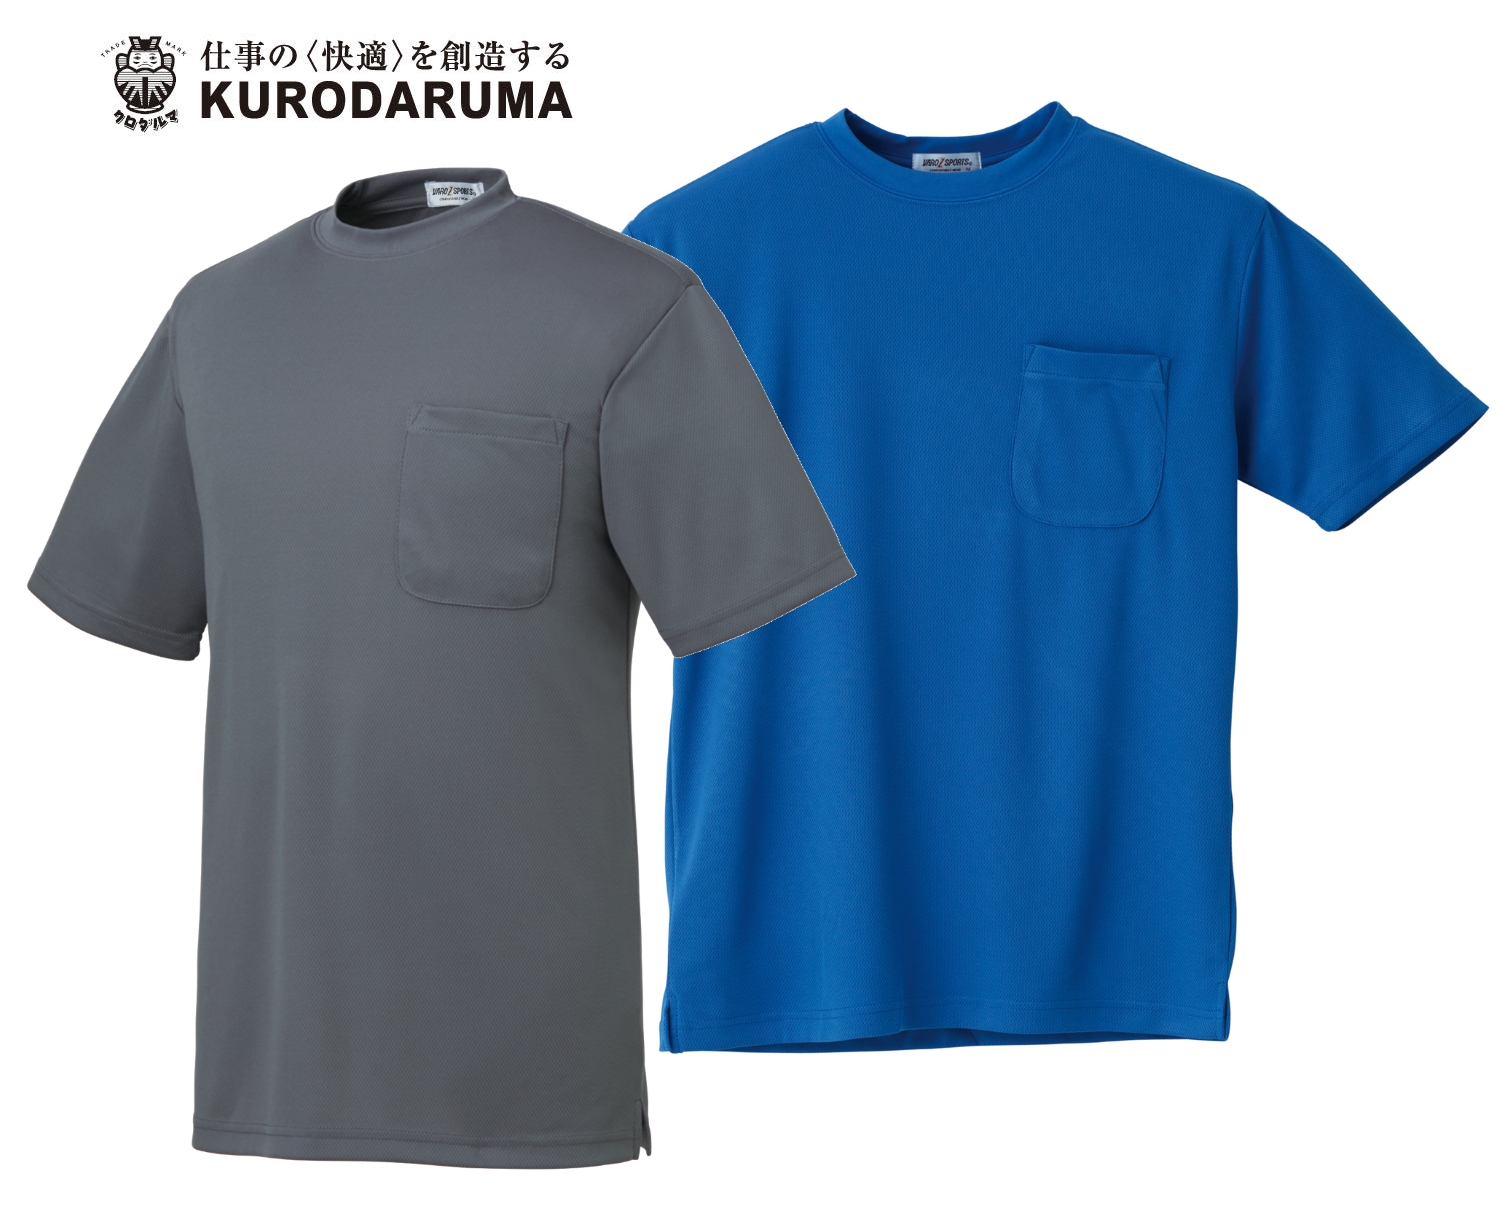 クロダルマ KURODARUMA ポリエステル100% 半袖Tシャツ 26443-1｜1,430